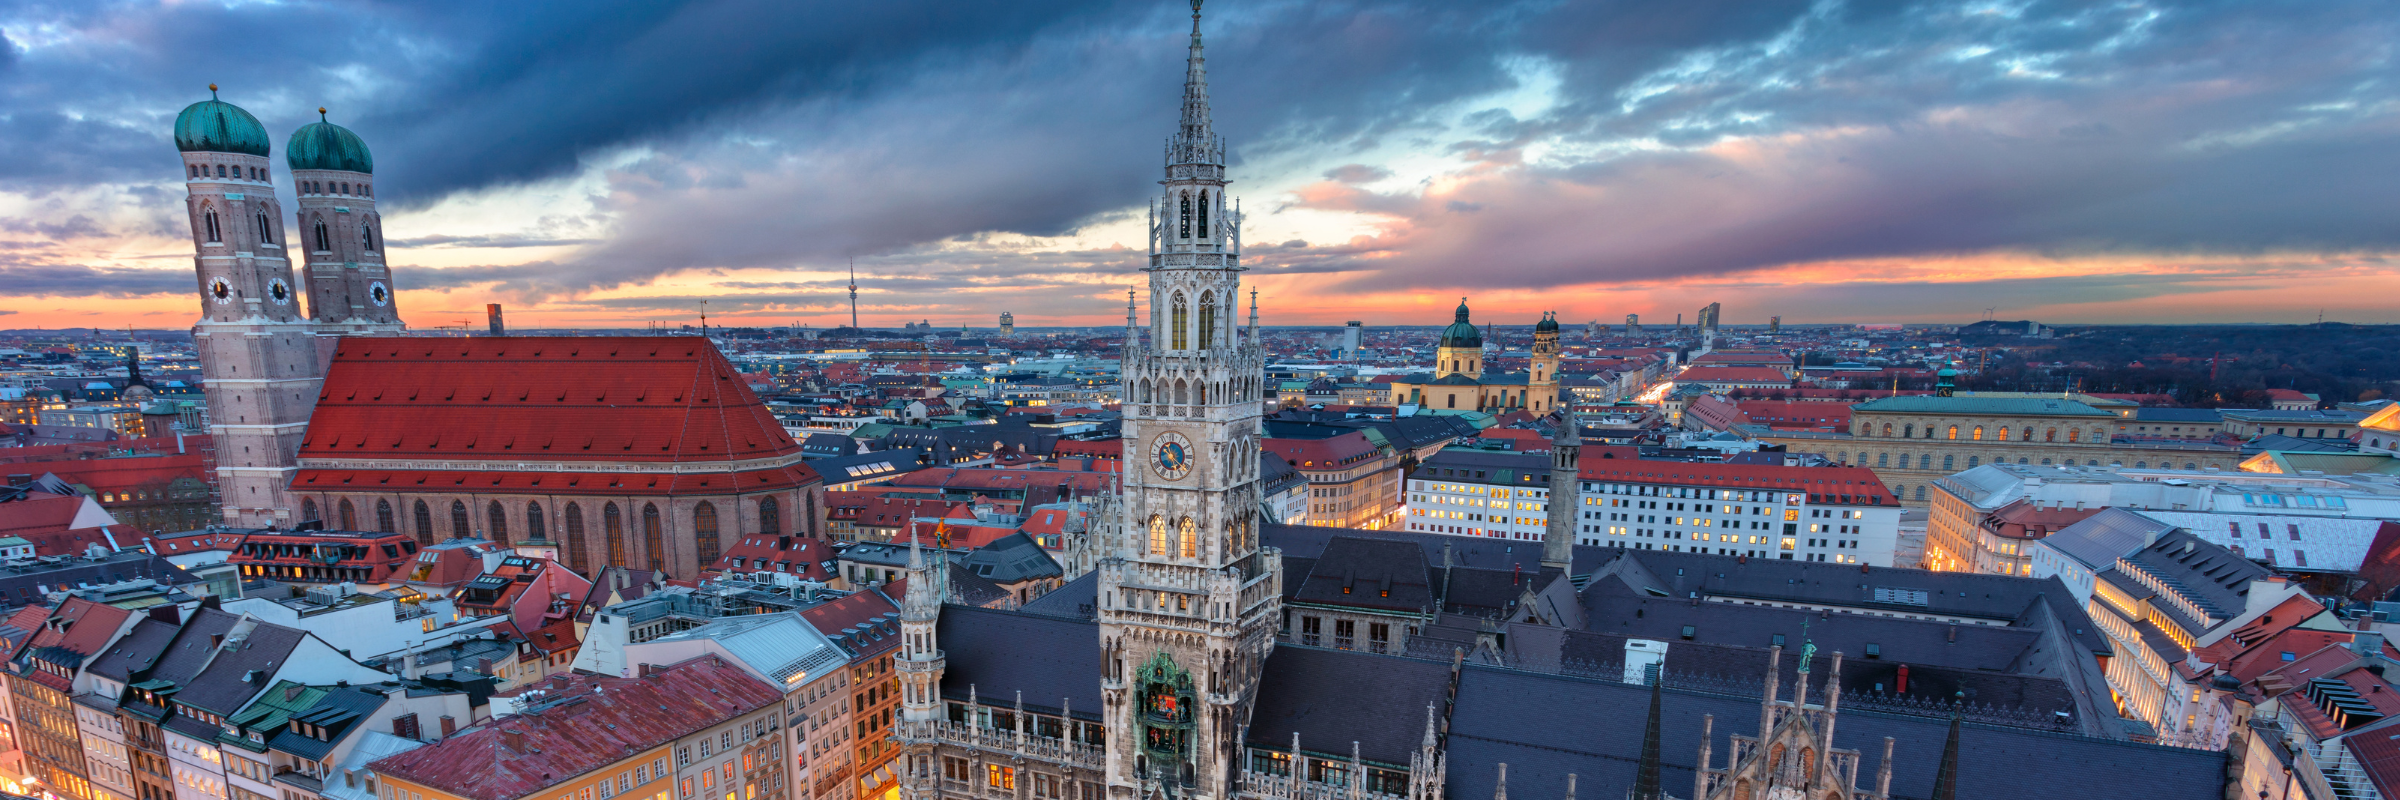 Seværdigheder i München – 13 must-see oplevelser i München